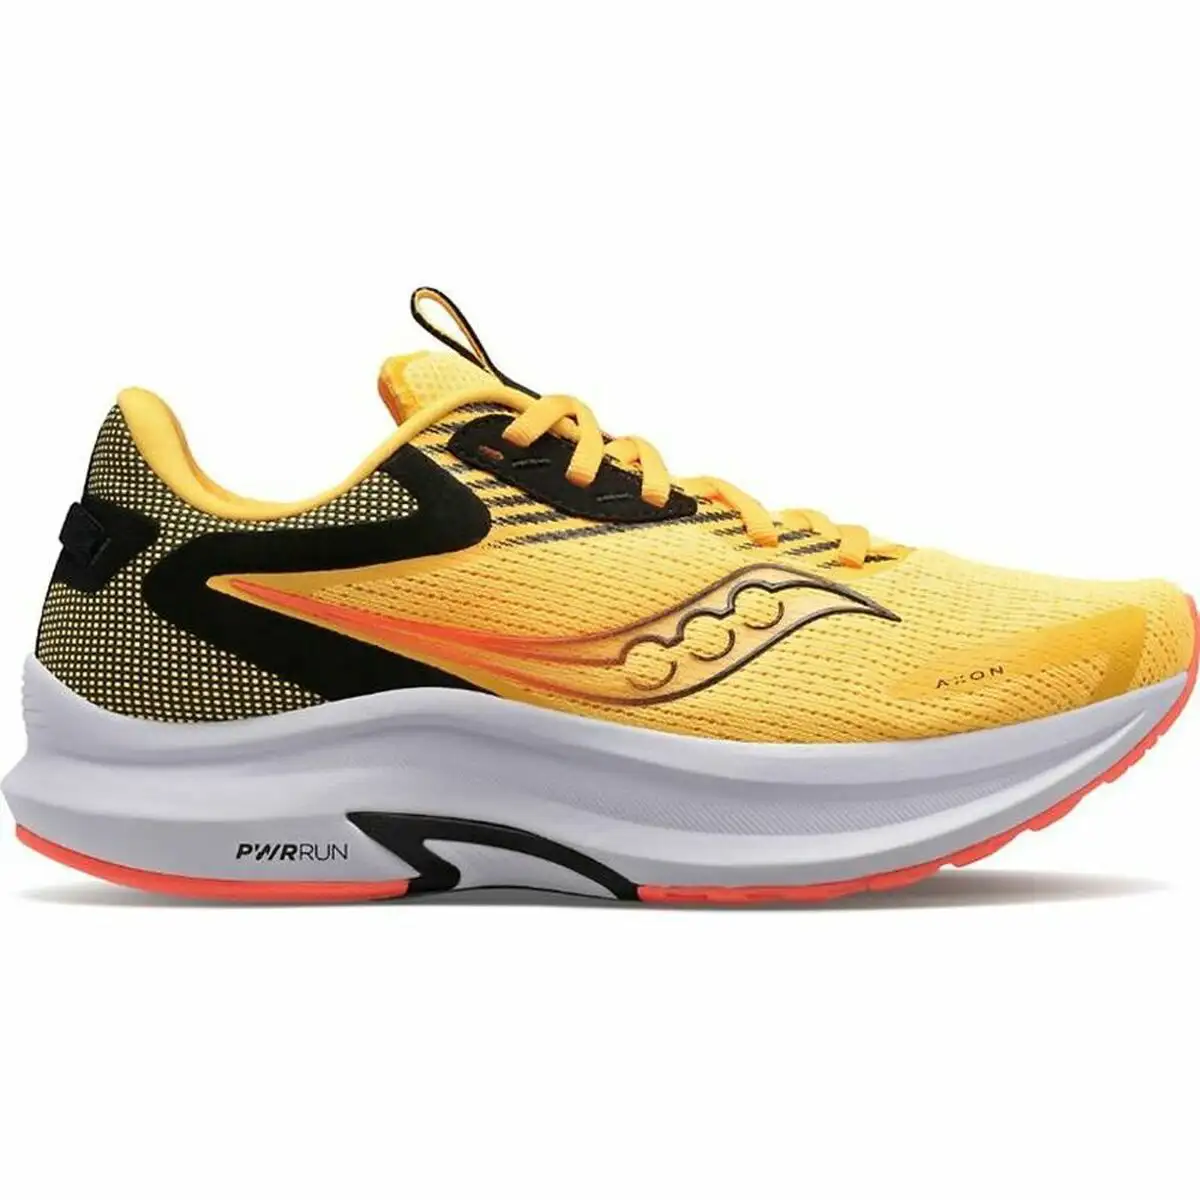 Chaussures de running pour adultes saucony axon 2 femme jaune_6292. DIAYTAR SENEGAL - L'Art du Shopping Facilité. Naviguez sur notre plateforme en ligne pour découvrir une expérience d'achat fluide et agréable, avec une gamme de produits adaptés à tous.